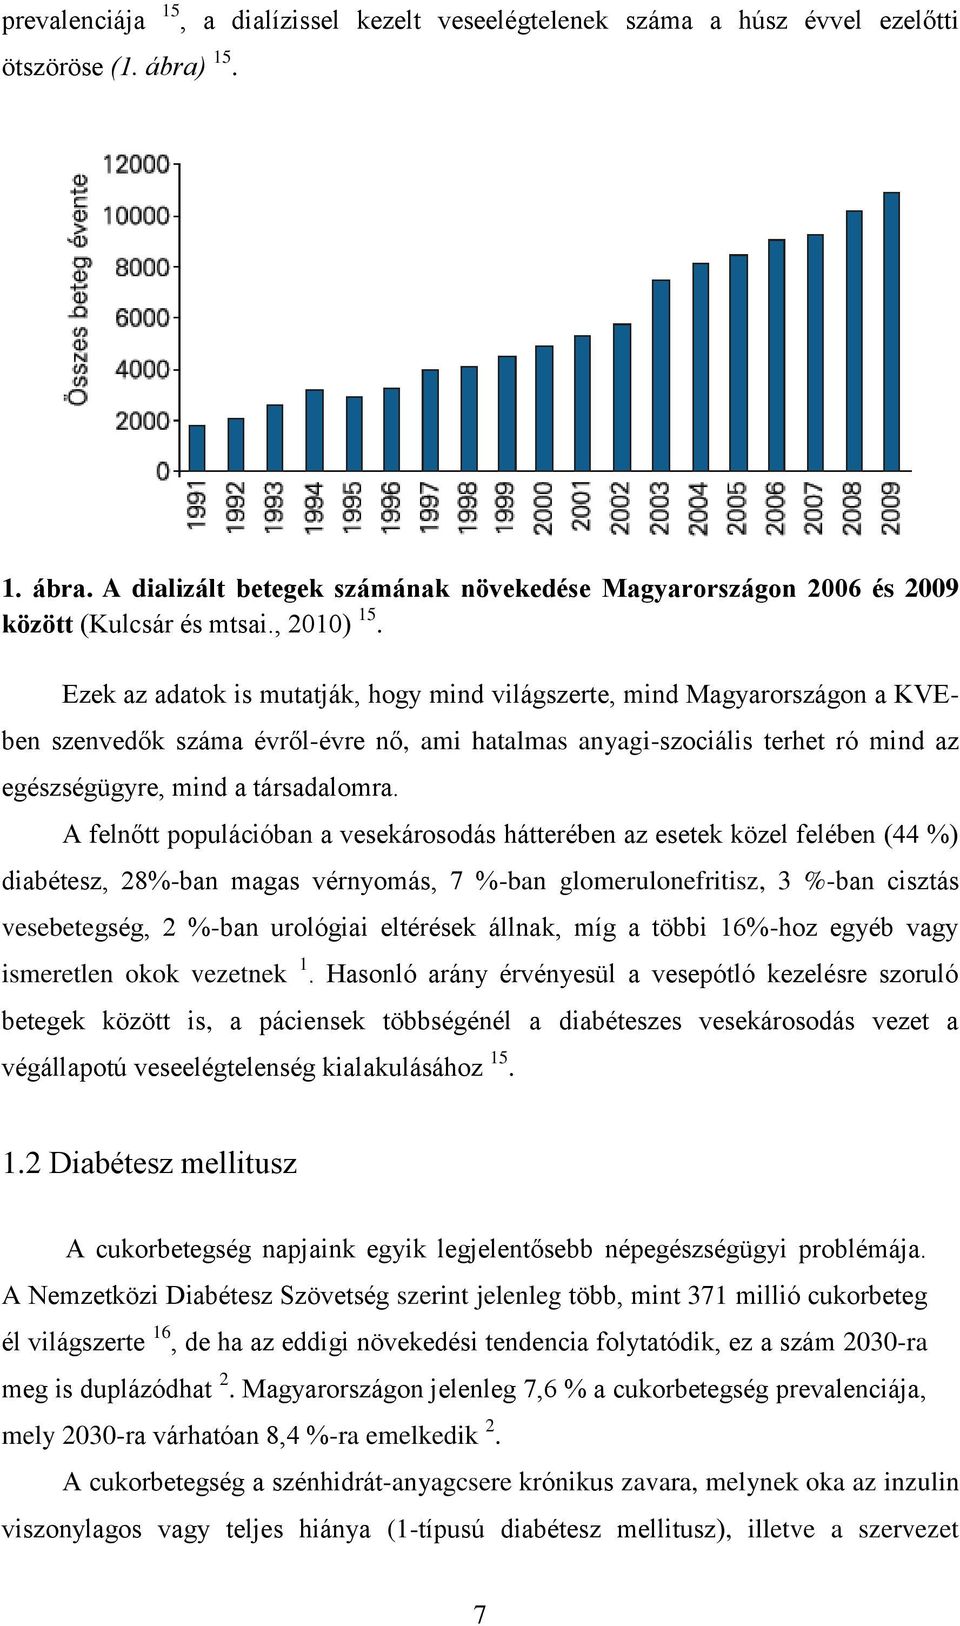 Ezek az adatok is mutatják, hogy mind világszerte, mind Magyarországon a KVEben szenvedők száma évről-évre nő, ami hatalmas anyagi-szociális terhet ró mind az egészségügyre, mind a társadalomra.